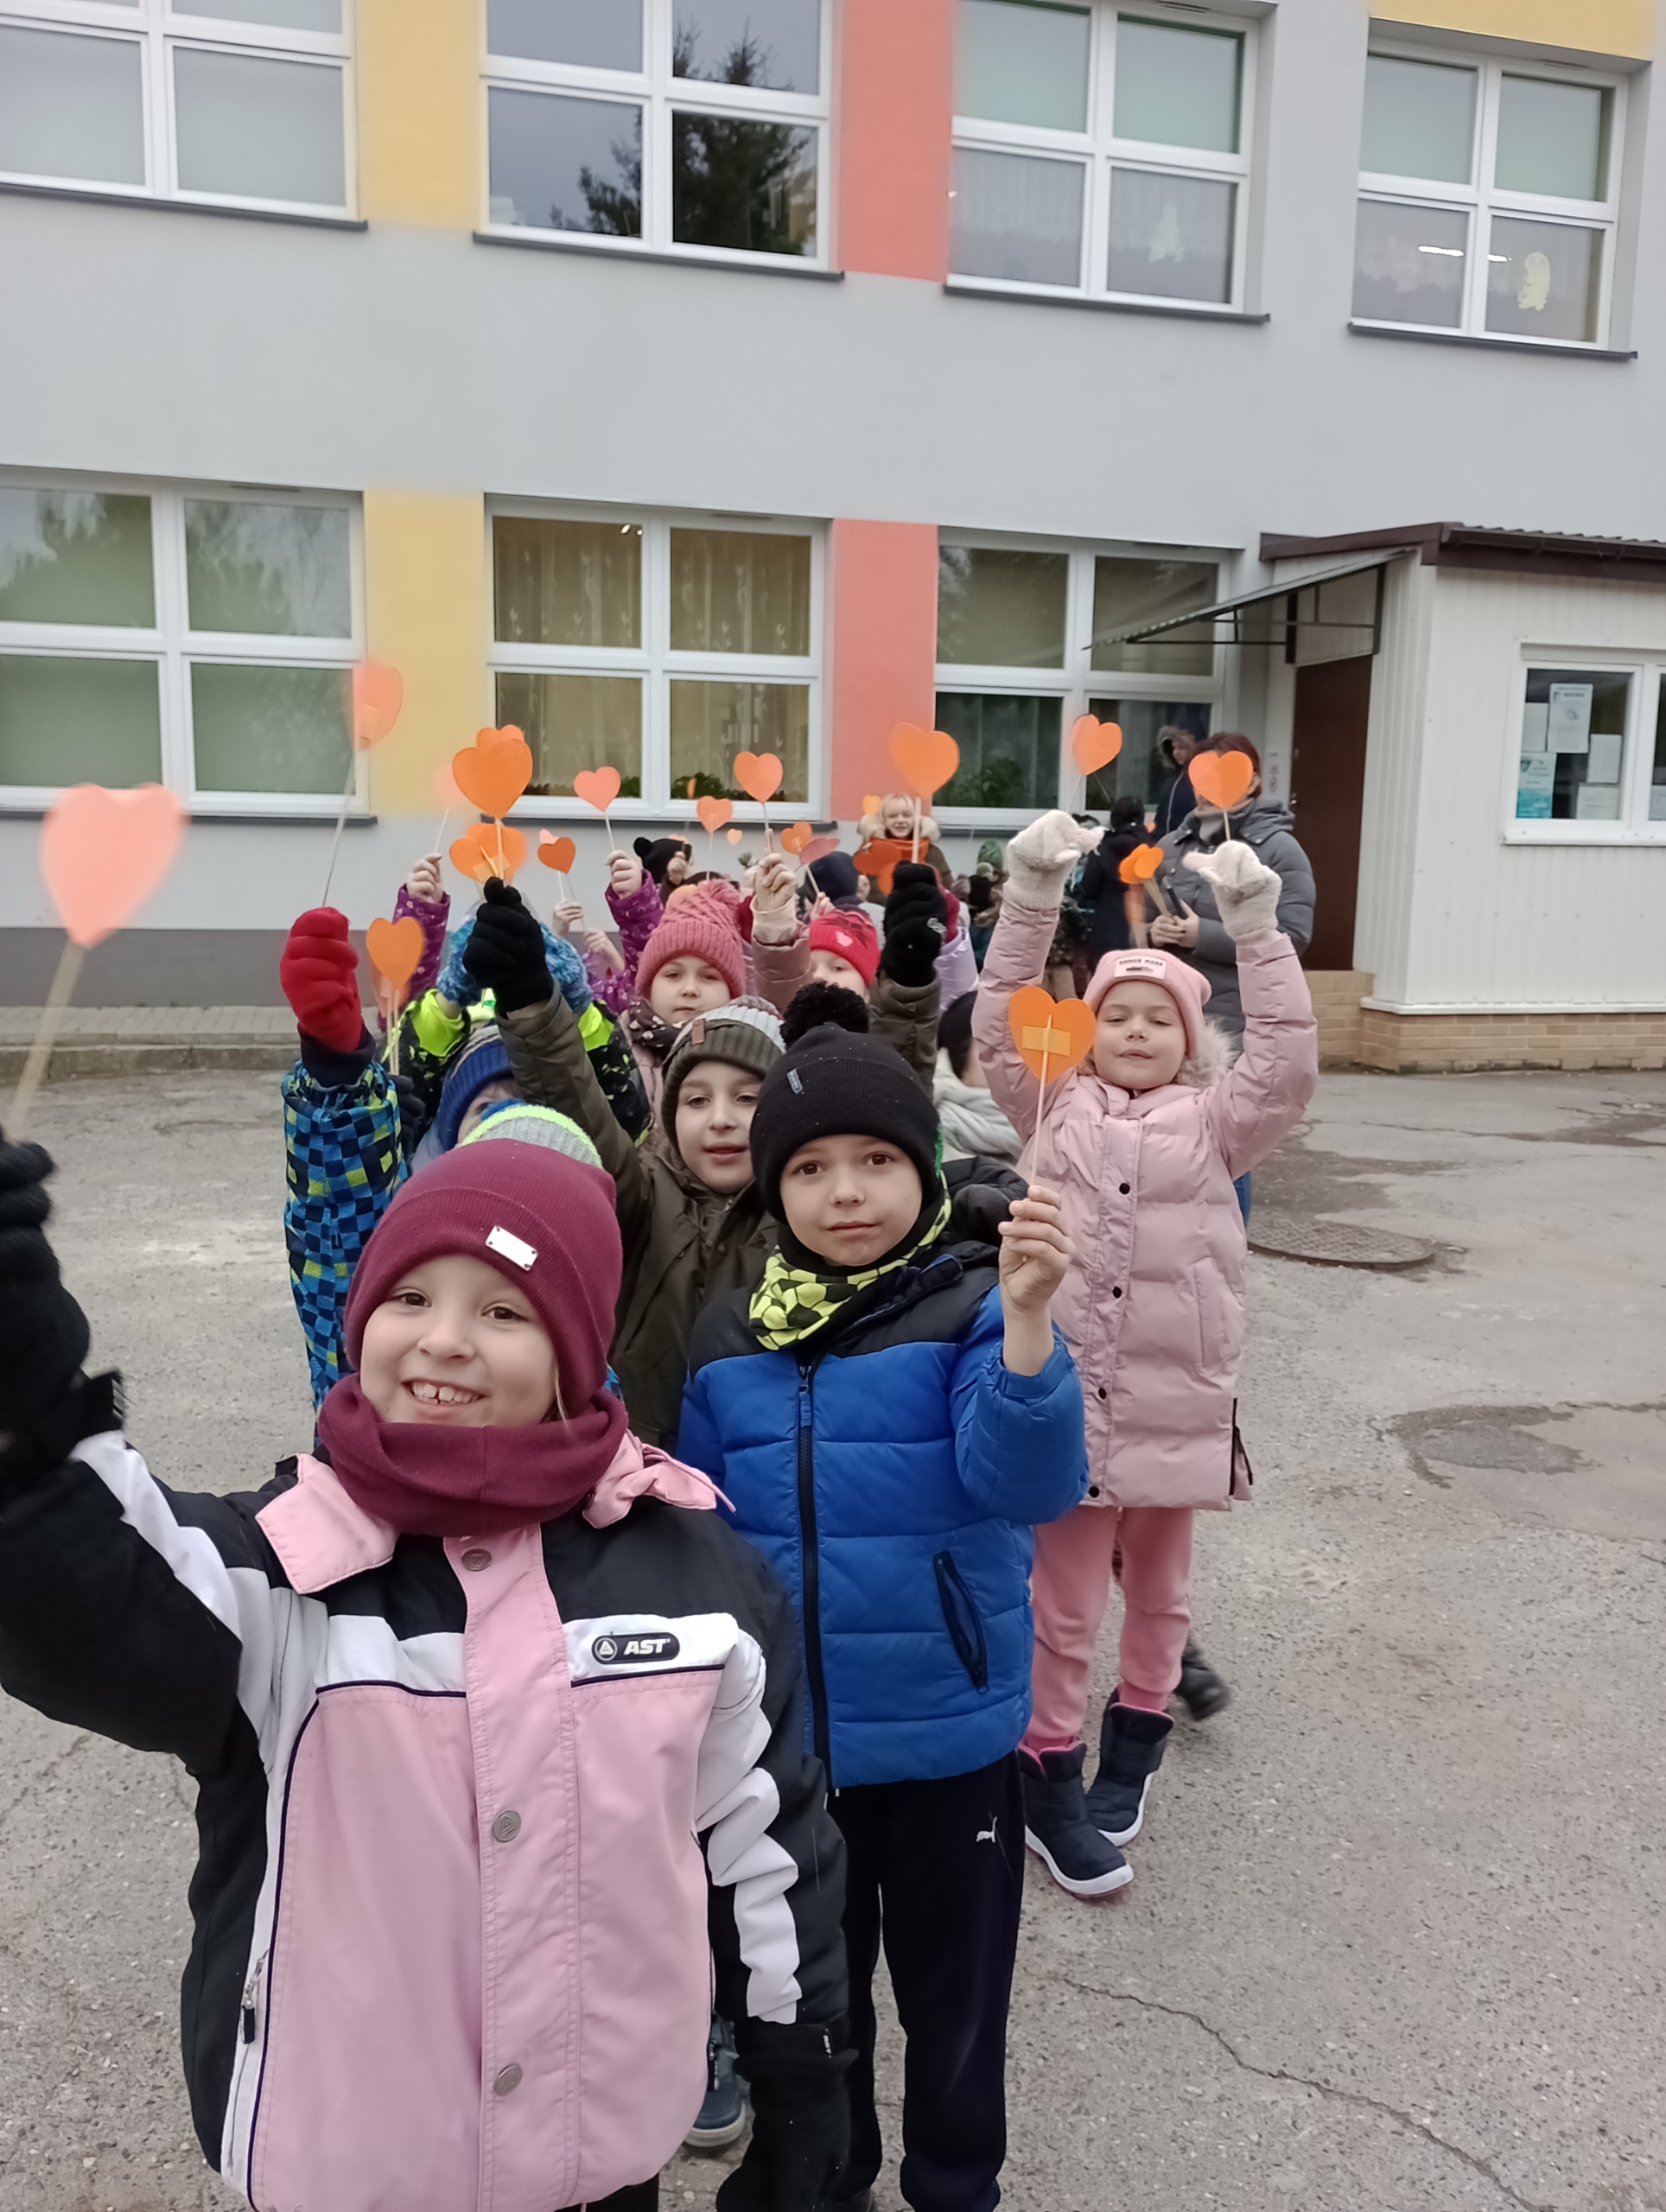 Na zdjęci dzieci stoją w parach na dworze a w ręku trzymają pomarańczowe serduszka